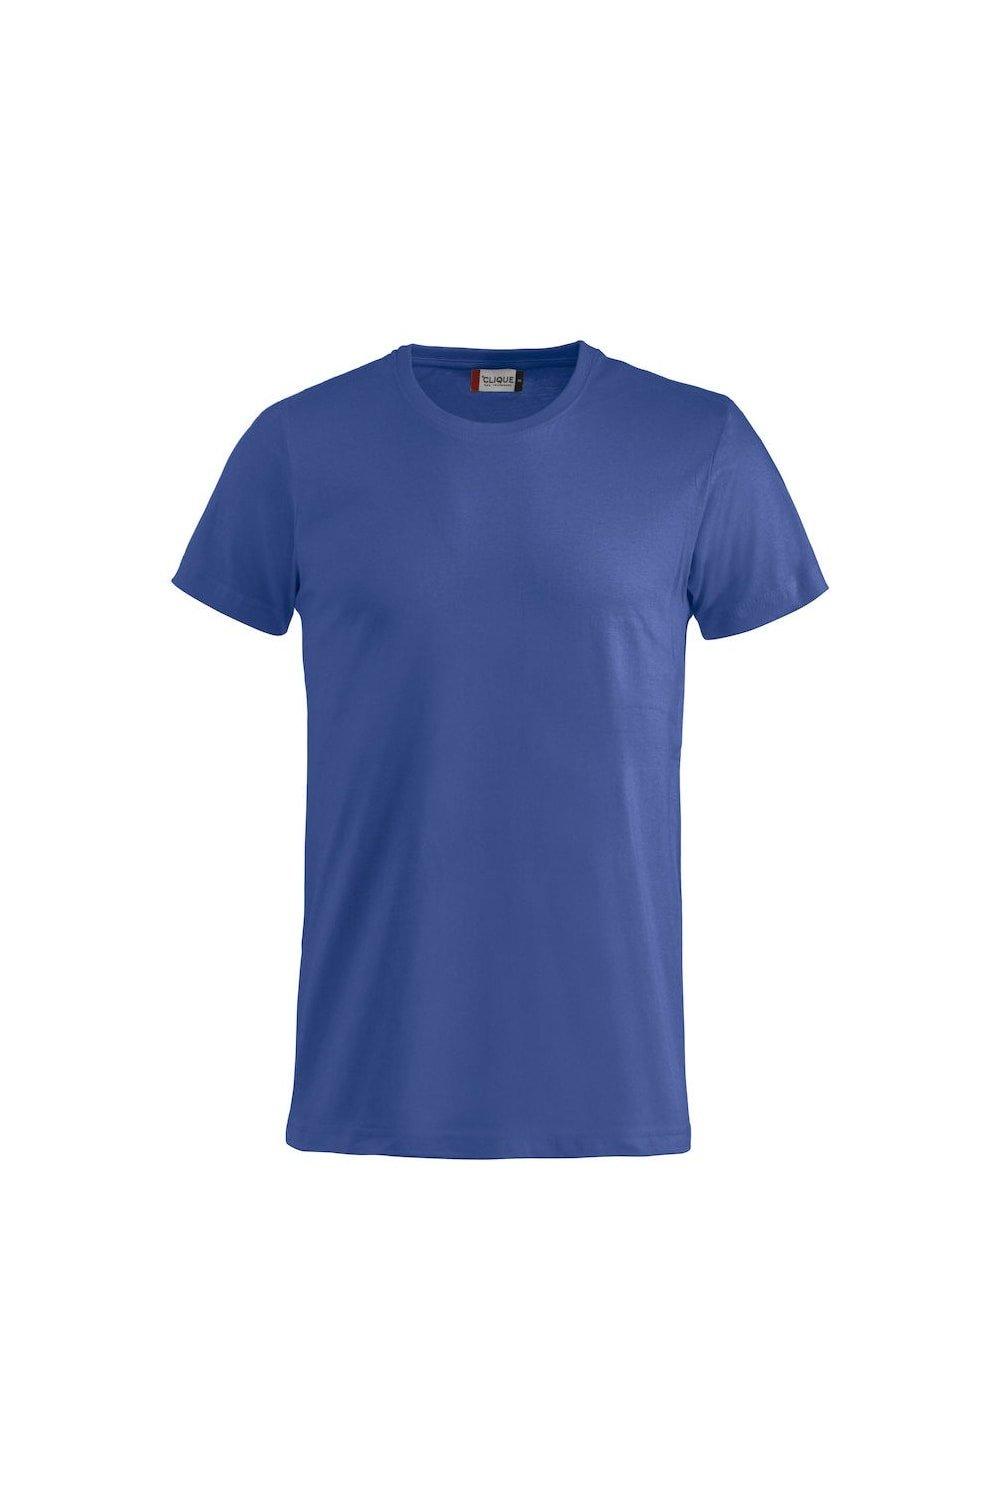 Базовая футболка Clique, синий базовая спортивная сумка clique синий